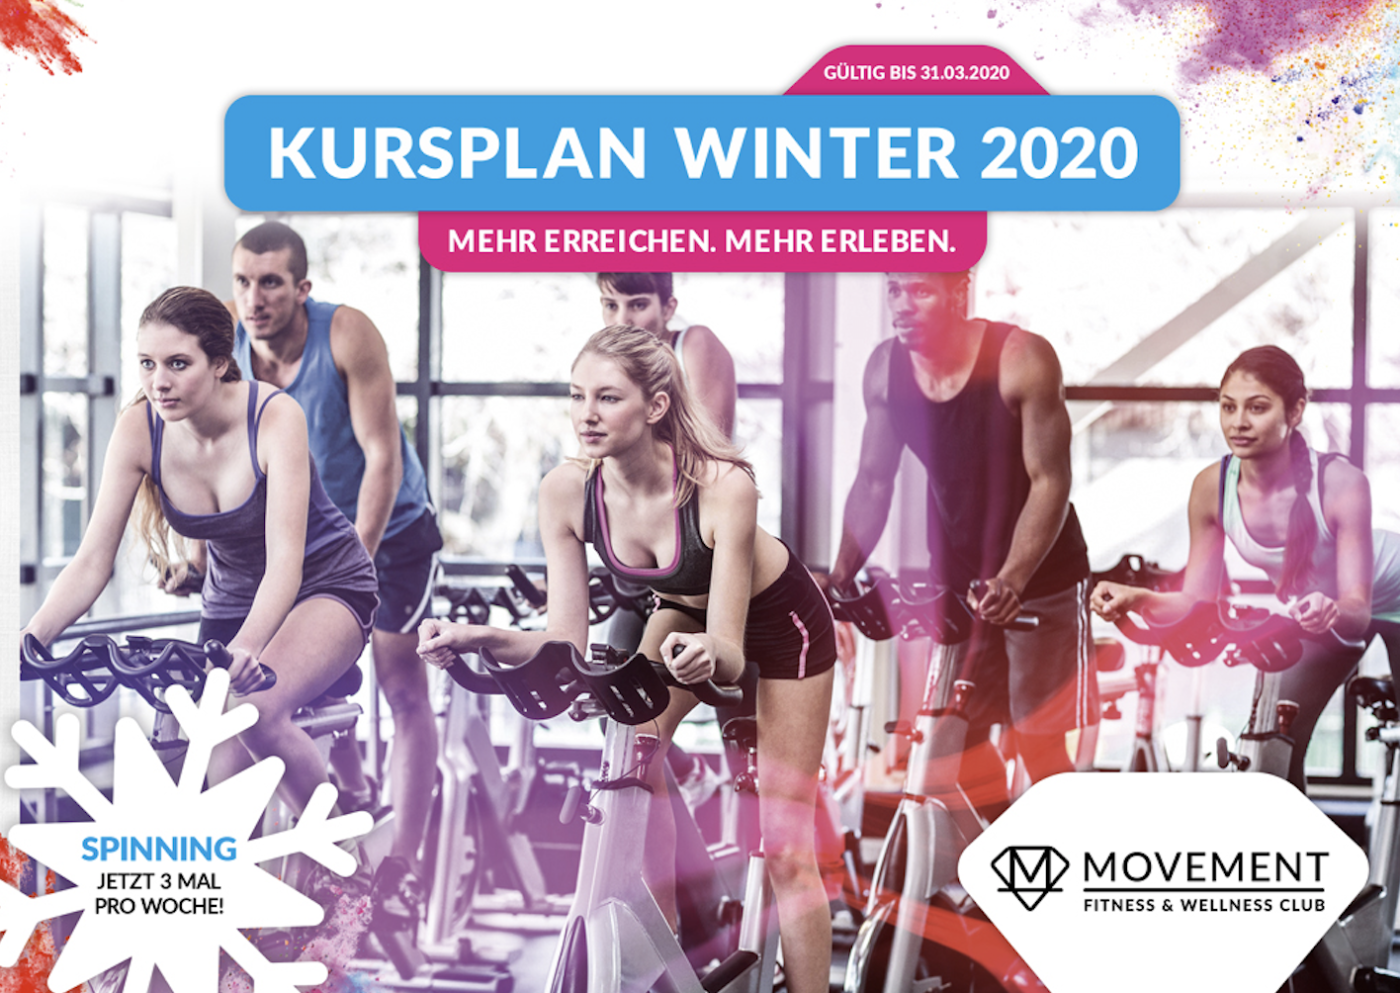 MOVEMENT SPINNING MÜNCHEN 1400x993 - Kursplan Winter 2020 : Sonntags zusätzlich Spinning